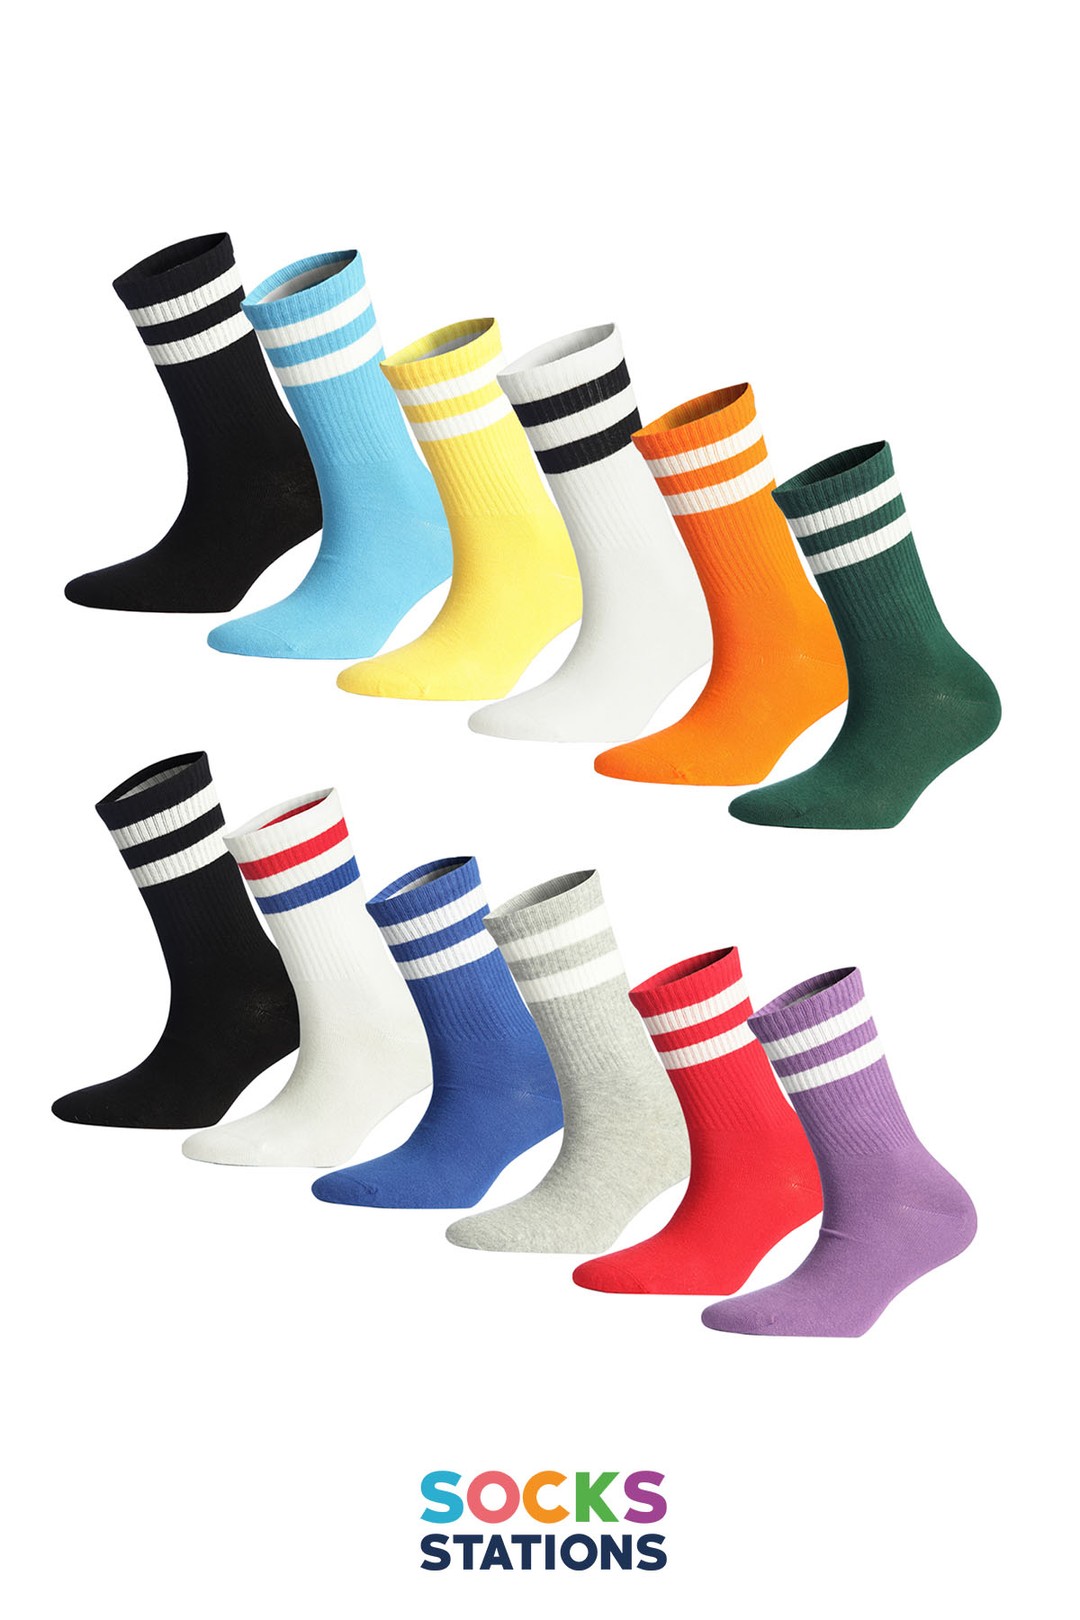 5. 6’lı Renkli Uzun Bilek Çorap Kutusu Kombinlerinde daha sade çorap modellerine yer vermek isteyenler için, siyah, lacivert, beyaz ve gri renklerinden oluşan uzun bilekli çorap kutusunu öneriyoruz. Ayağın şeklini alan bilek çoraplar, 6 farklı üründen oluşmaktadır.  